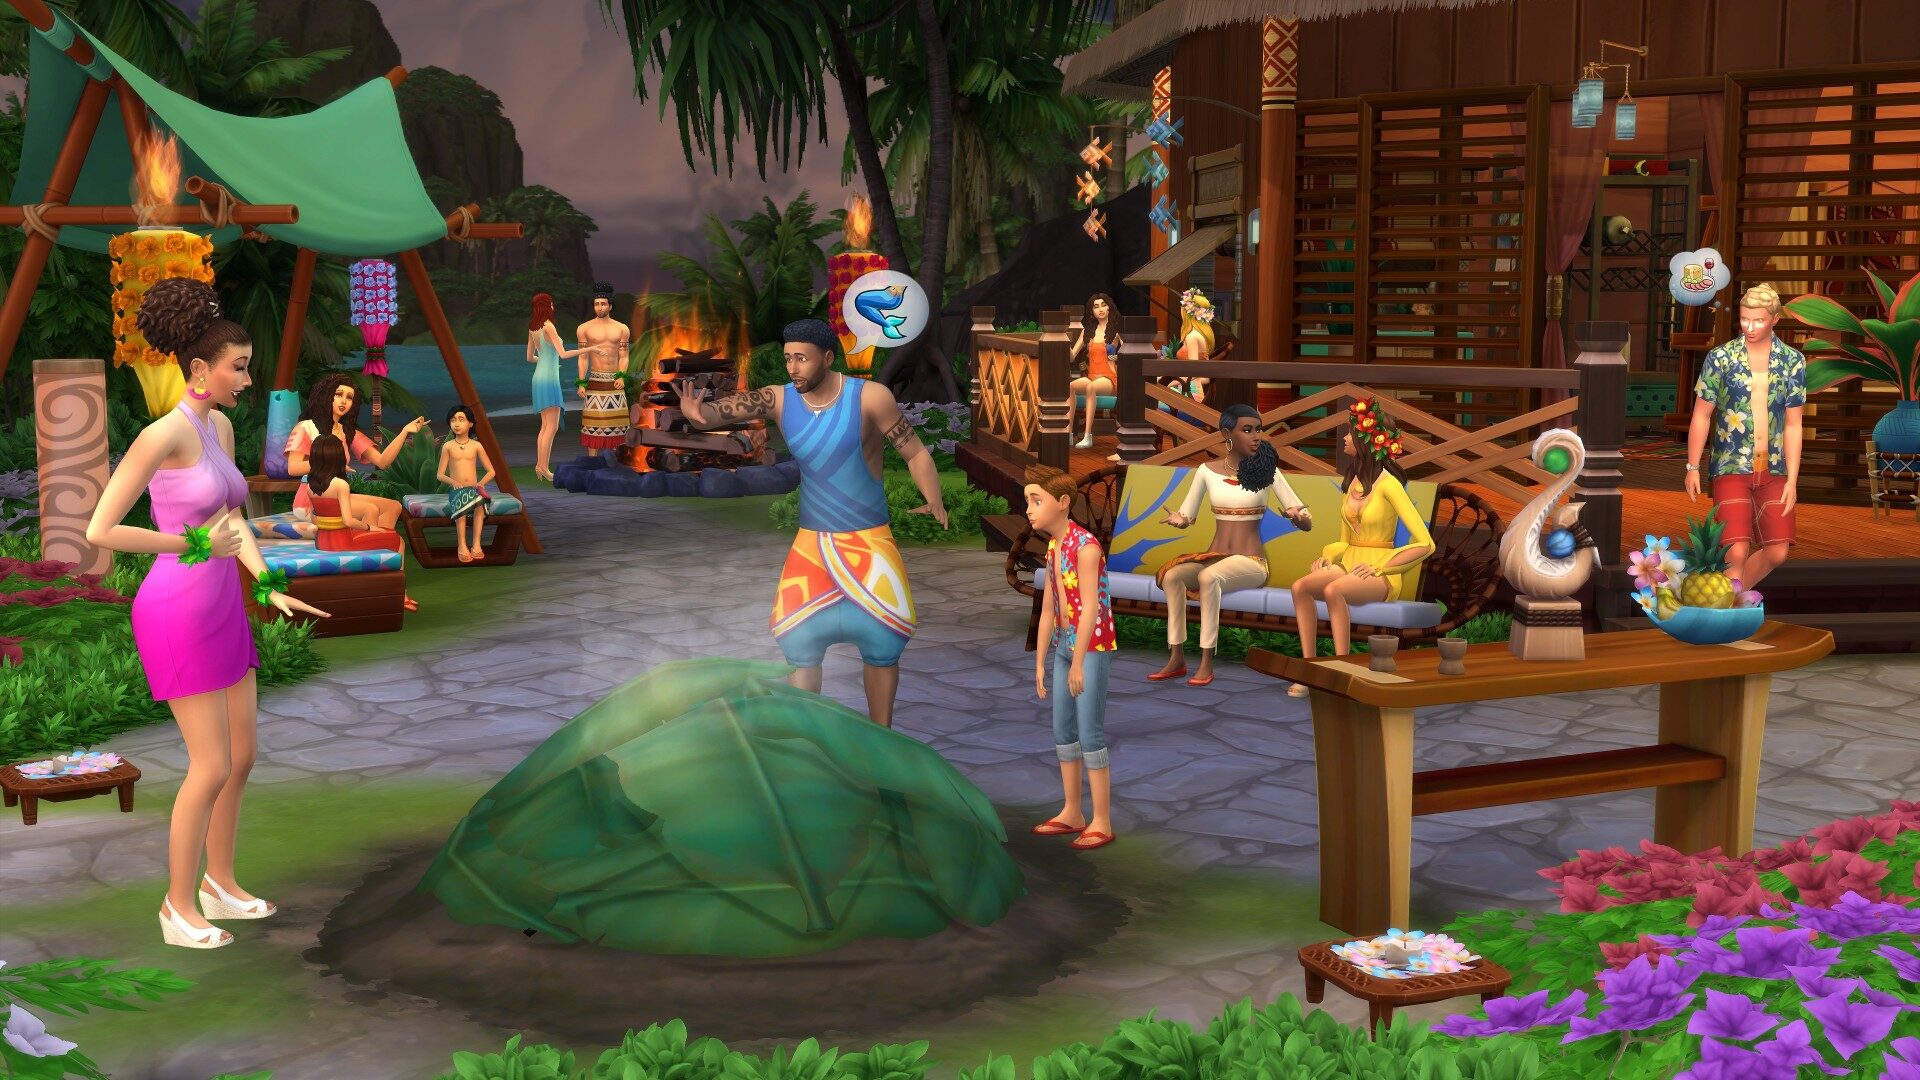 Comprar The Sims 4 CD Chave para PC Preço Barato